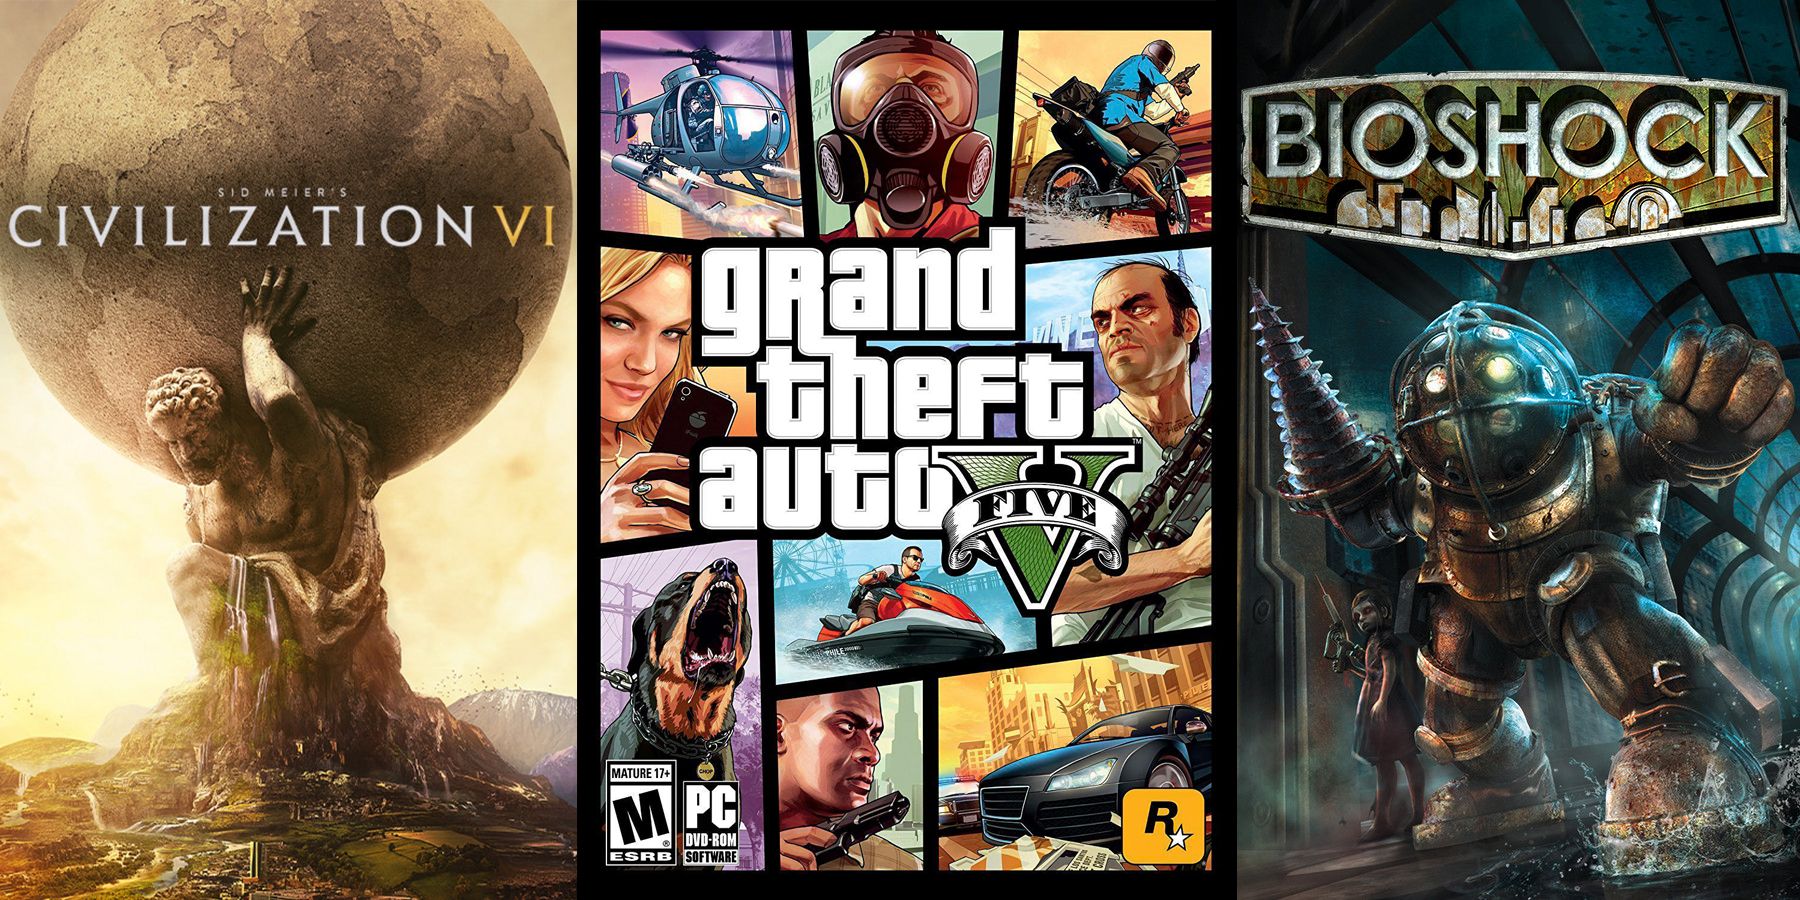 Civilization 6, Grand Theft Auto 5, and Bioshock cover art